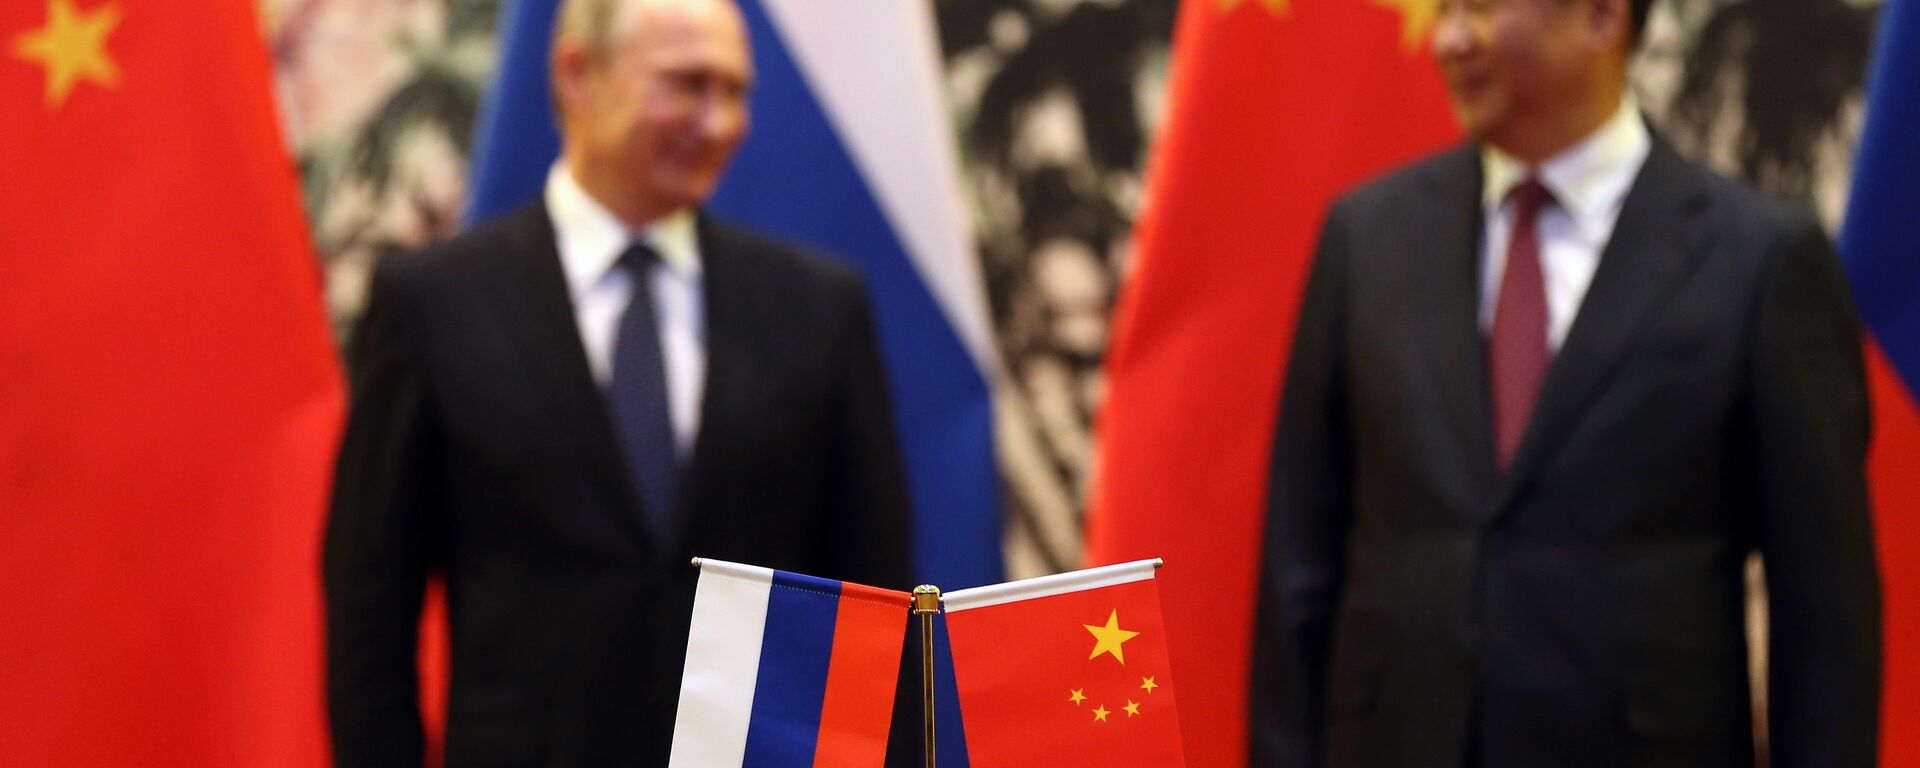 Bandeiras da Rússia e China durante a reunião de Vladimir Putin e Xi Jinping - Sputnik Brasil, 1920, 04.02.2022